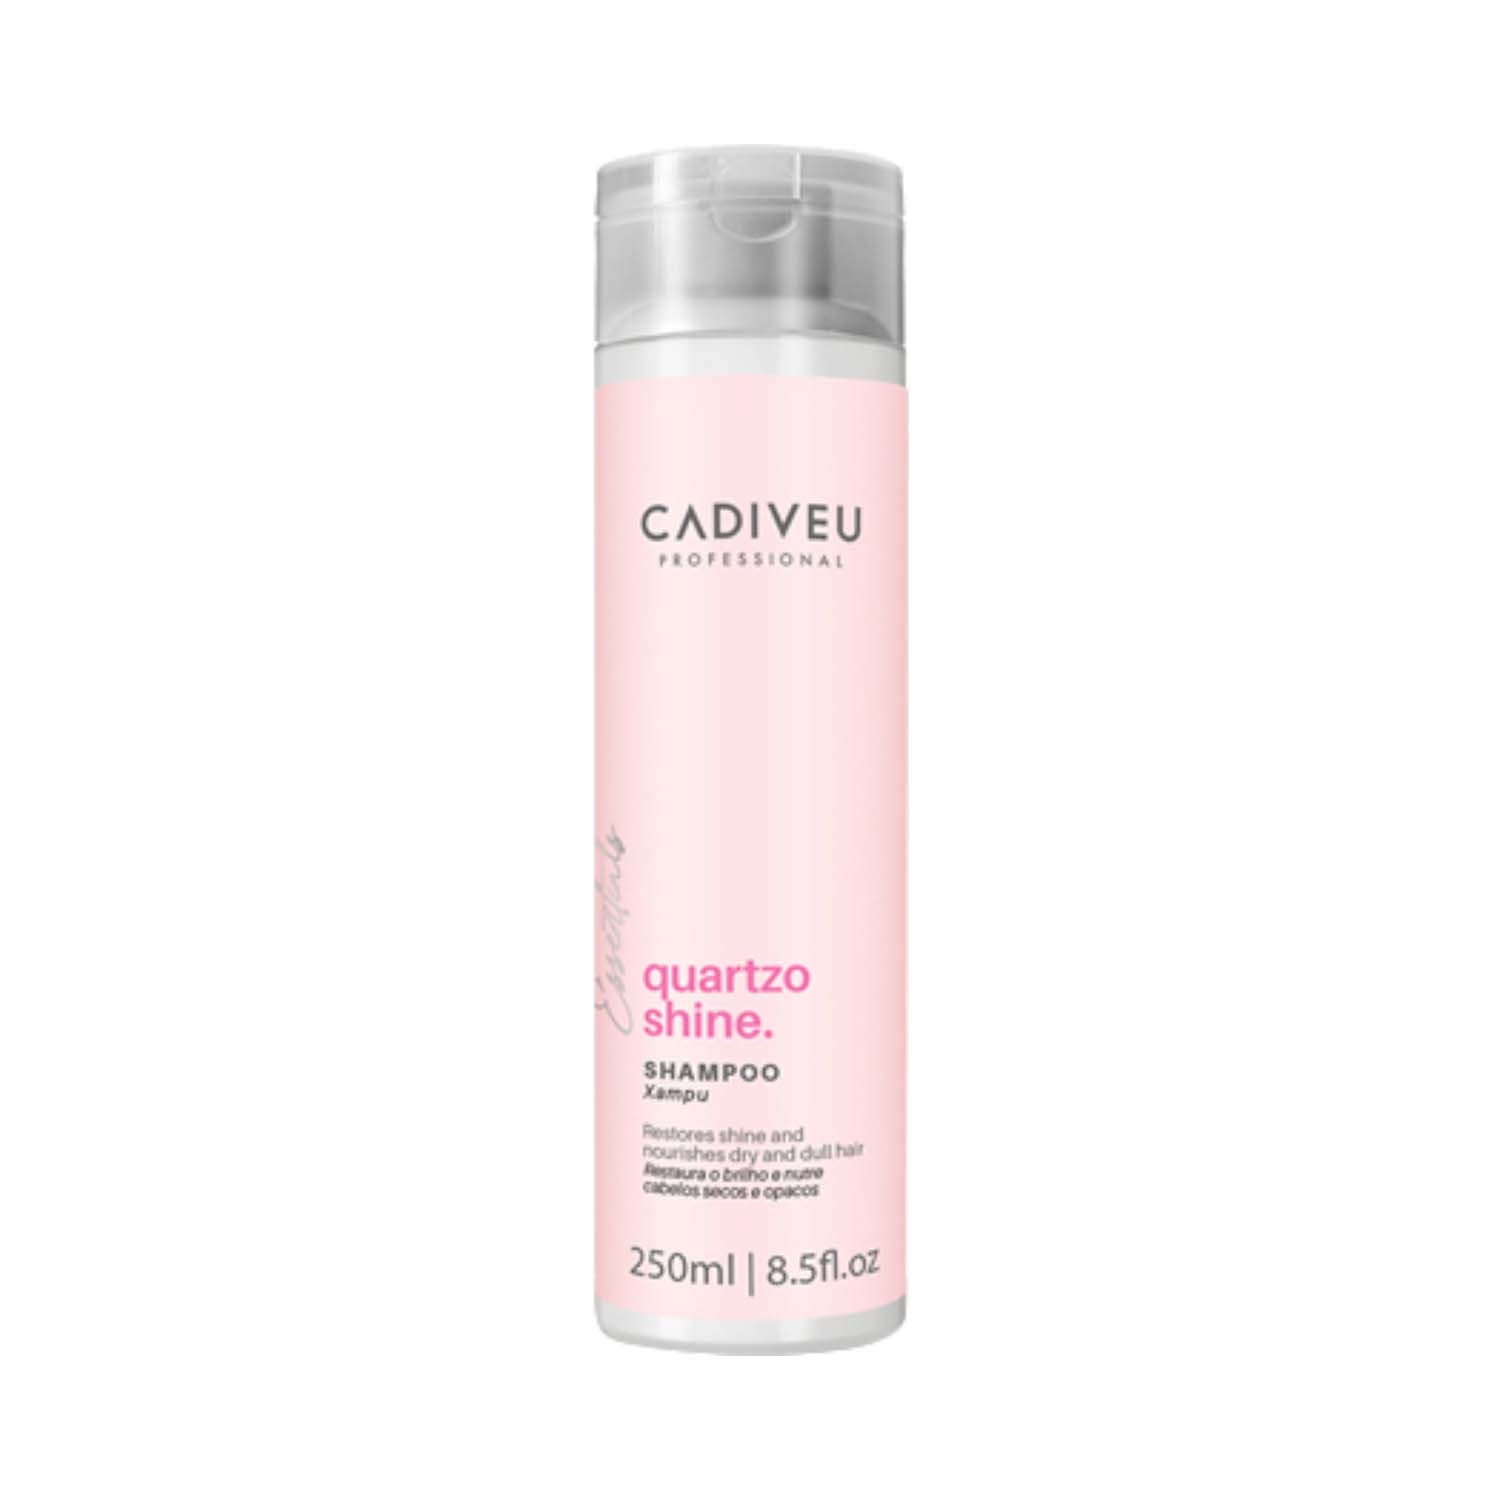 Cadiveu Quartzo Shine Shampoo (250ml)